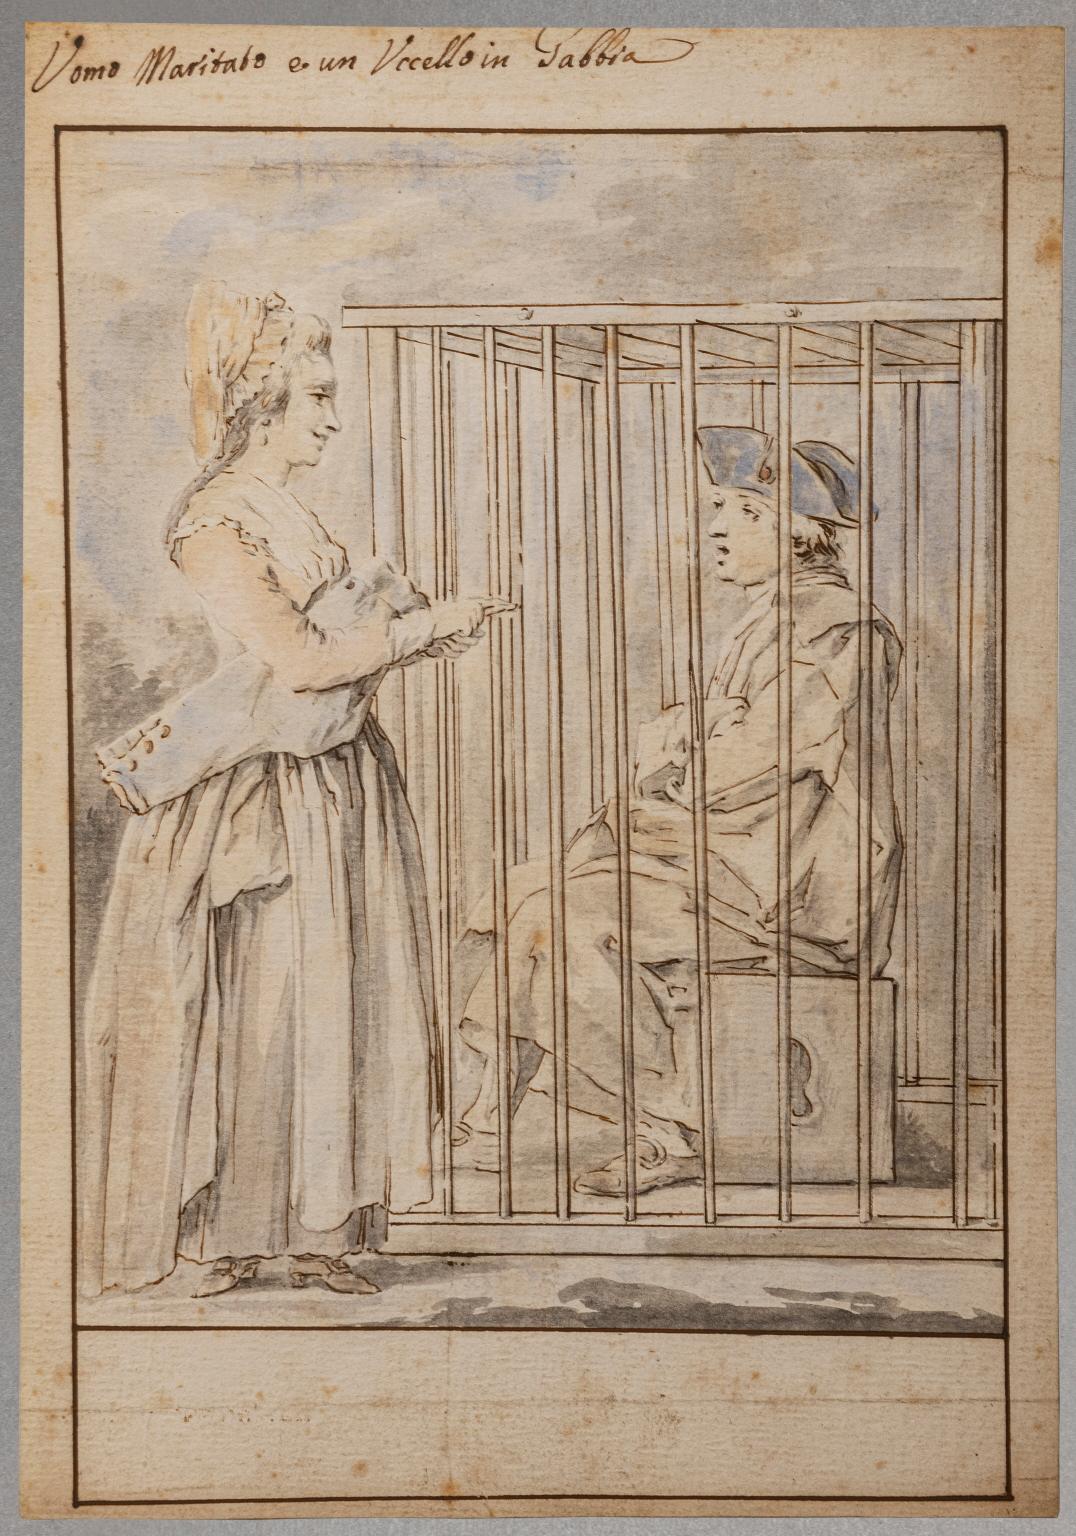 Florence Zeichnung Liebe, Hochzeit, Figurative Szene, Aquarell, Papier, 18. Jahrhundert (Rokoko), Art, von Giuseppe Piattoli